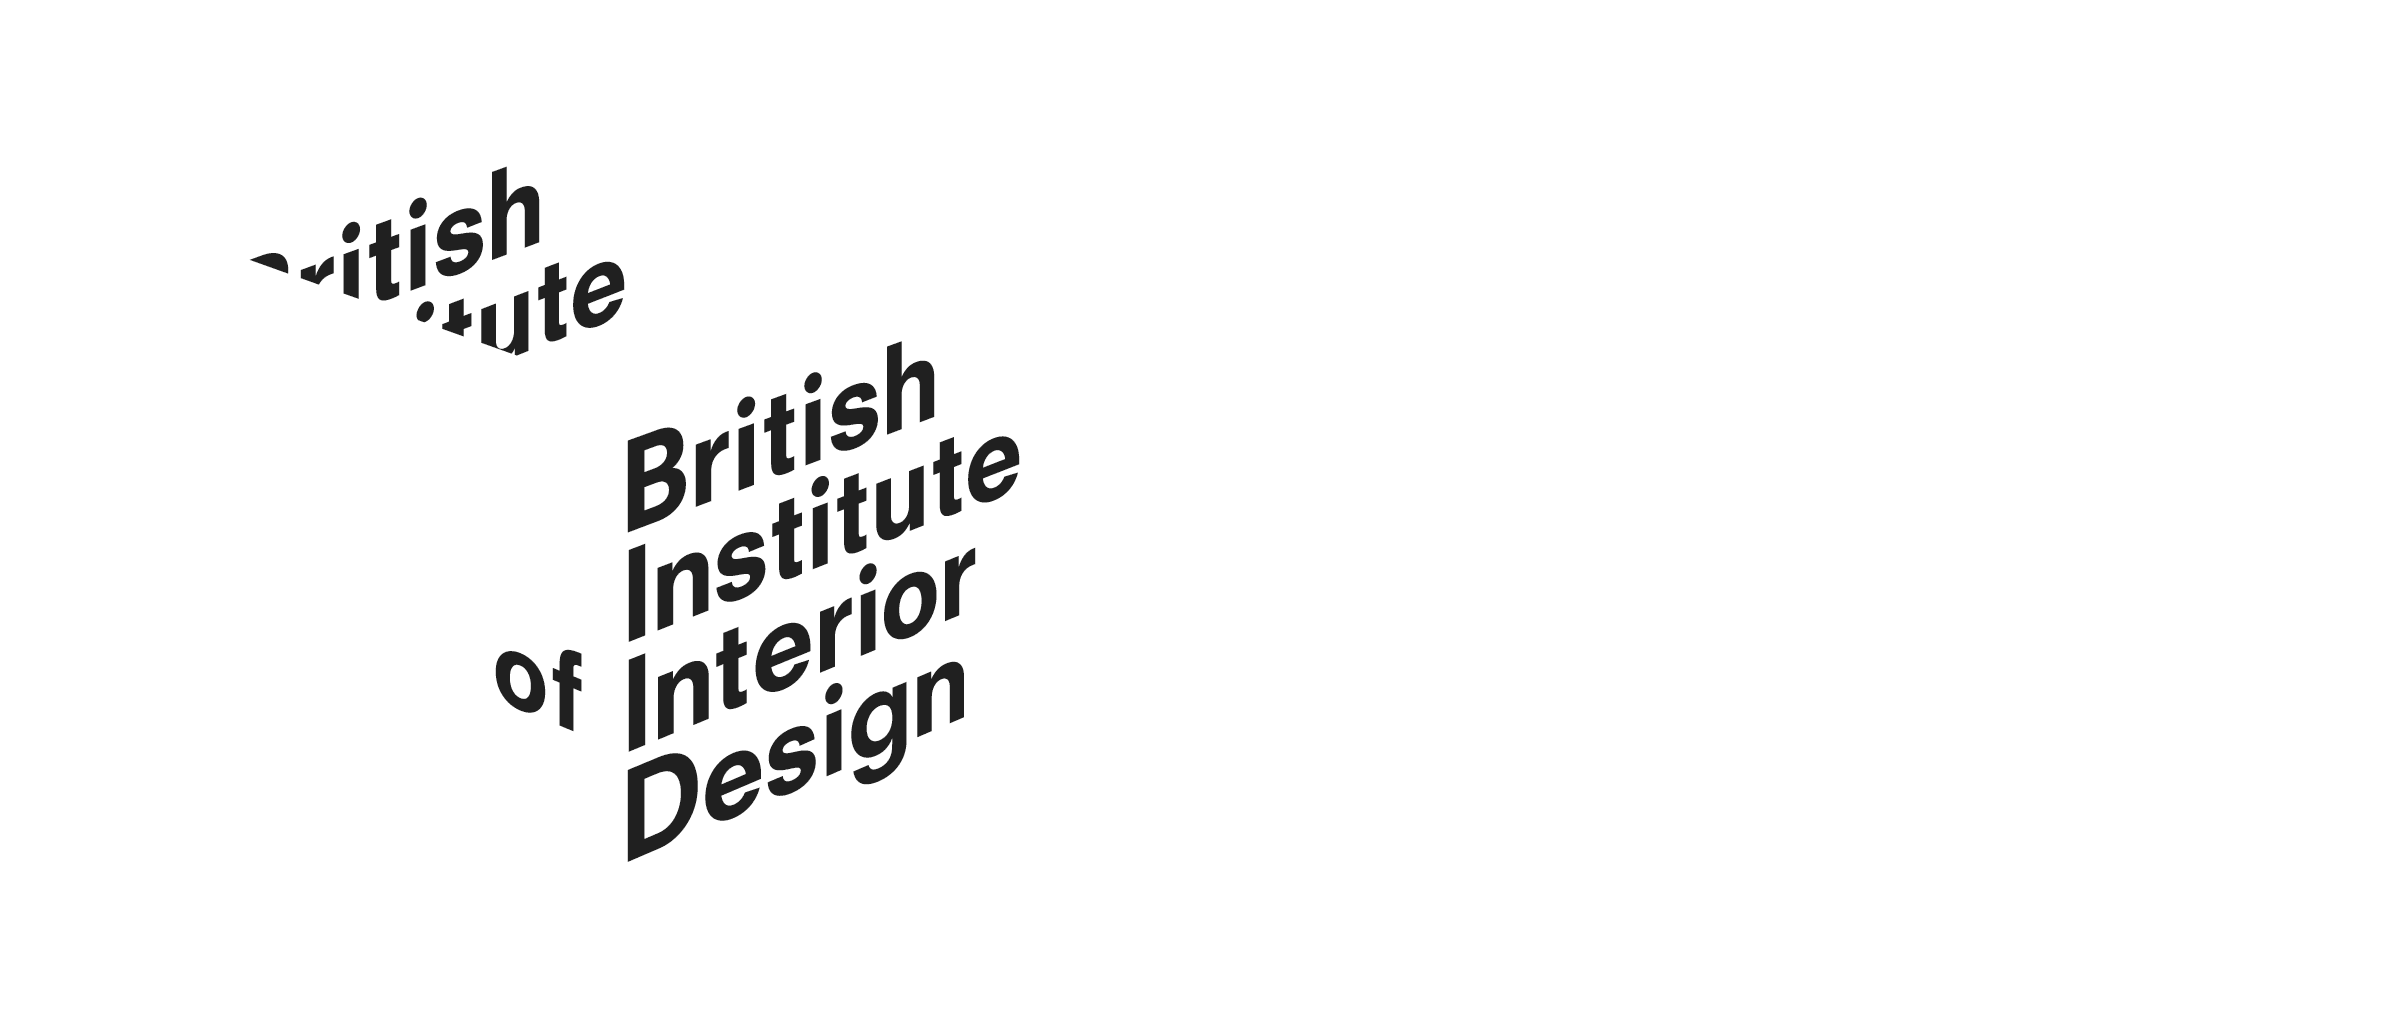 British Institute of Interior Design, Industry Partner Logo